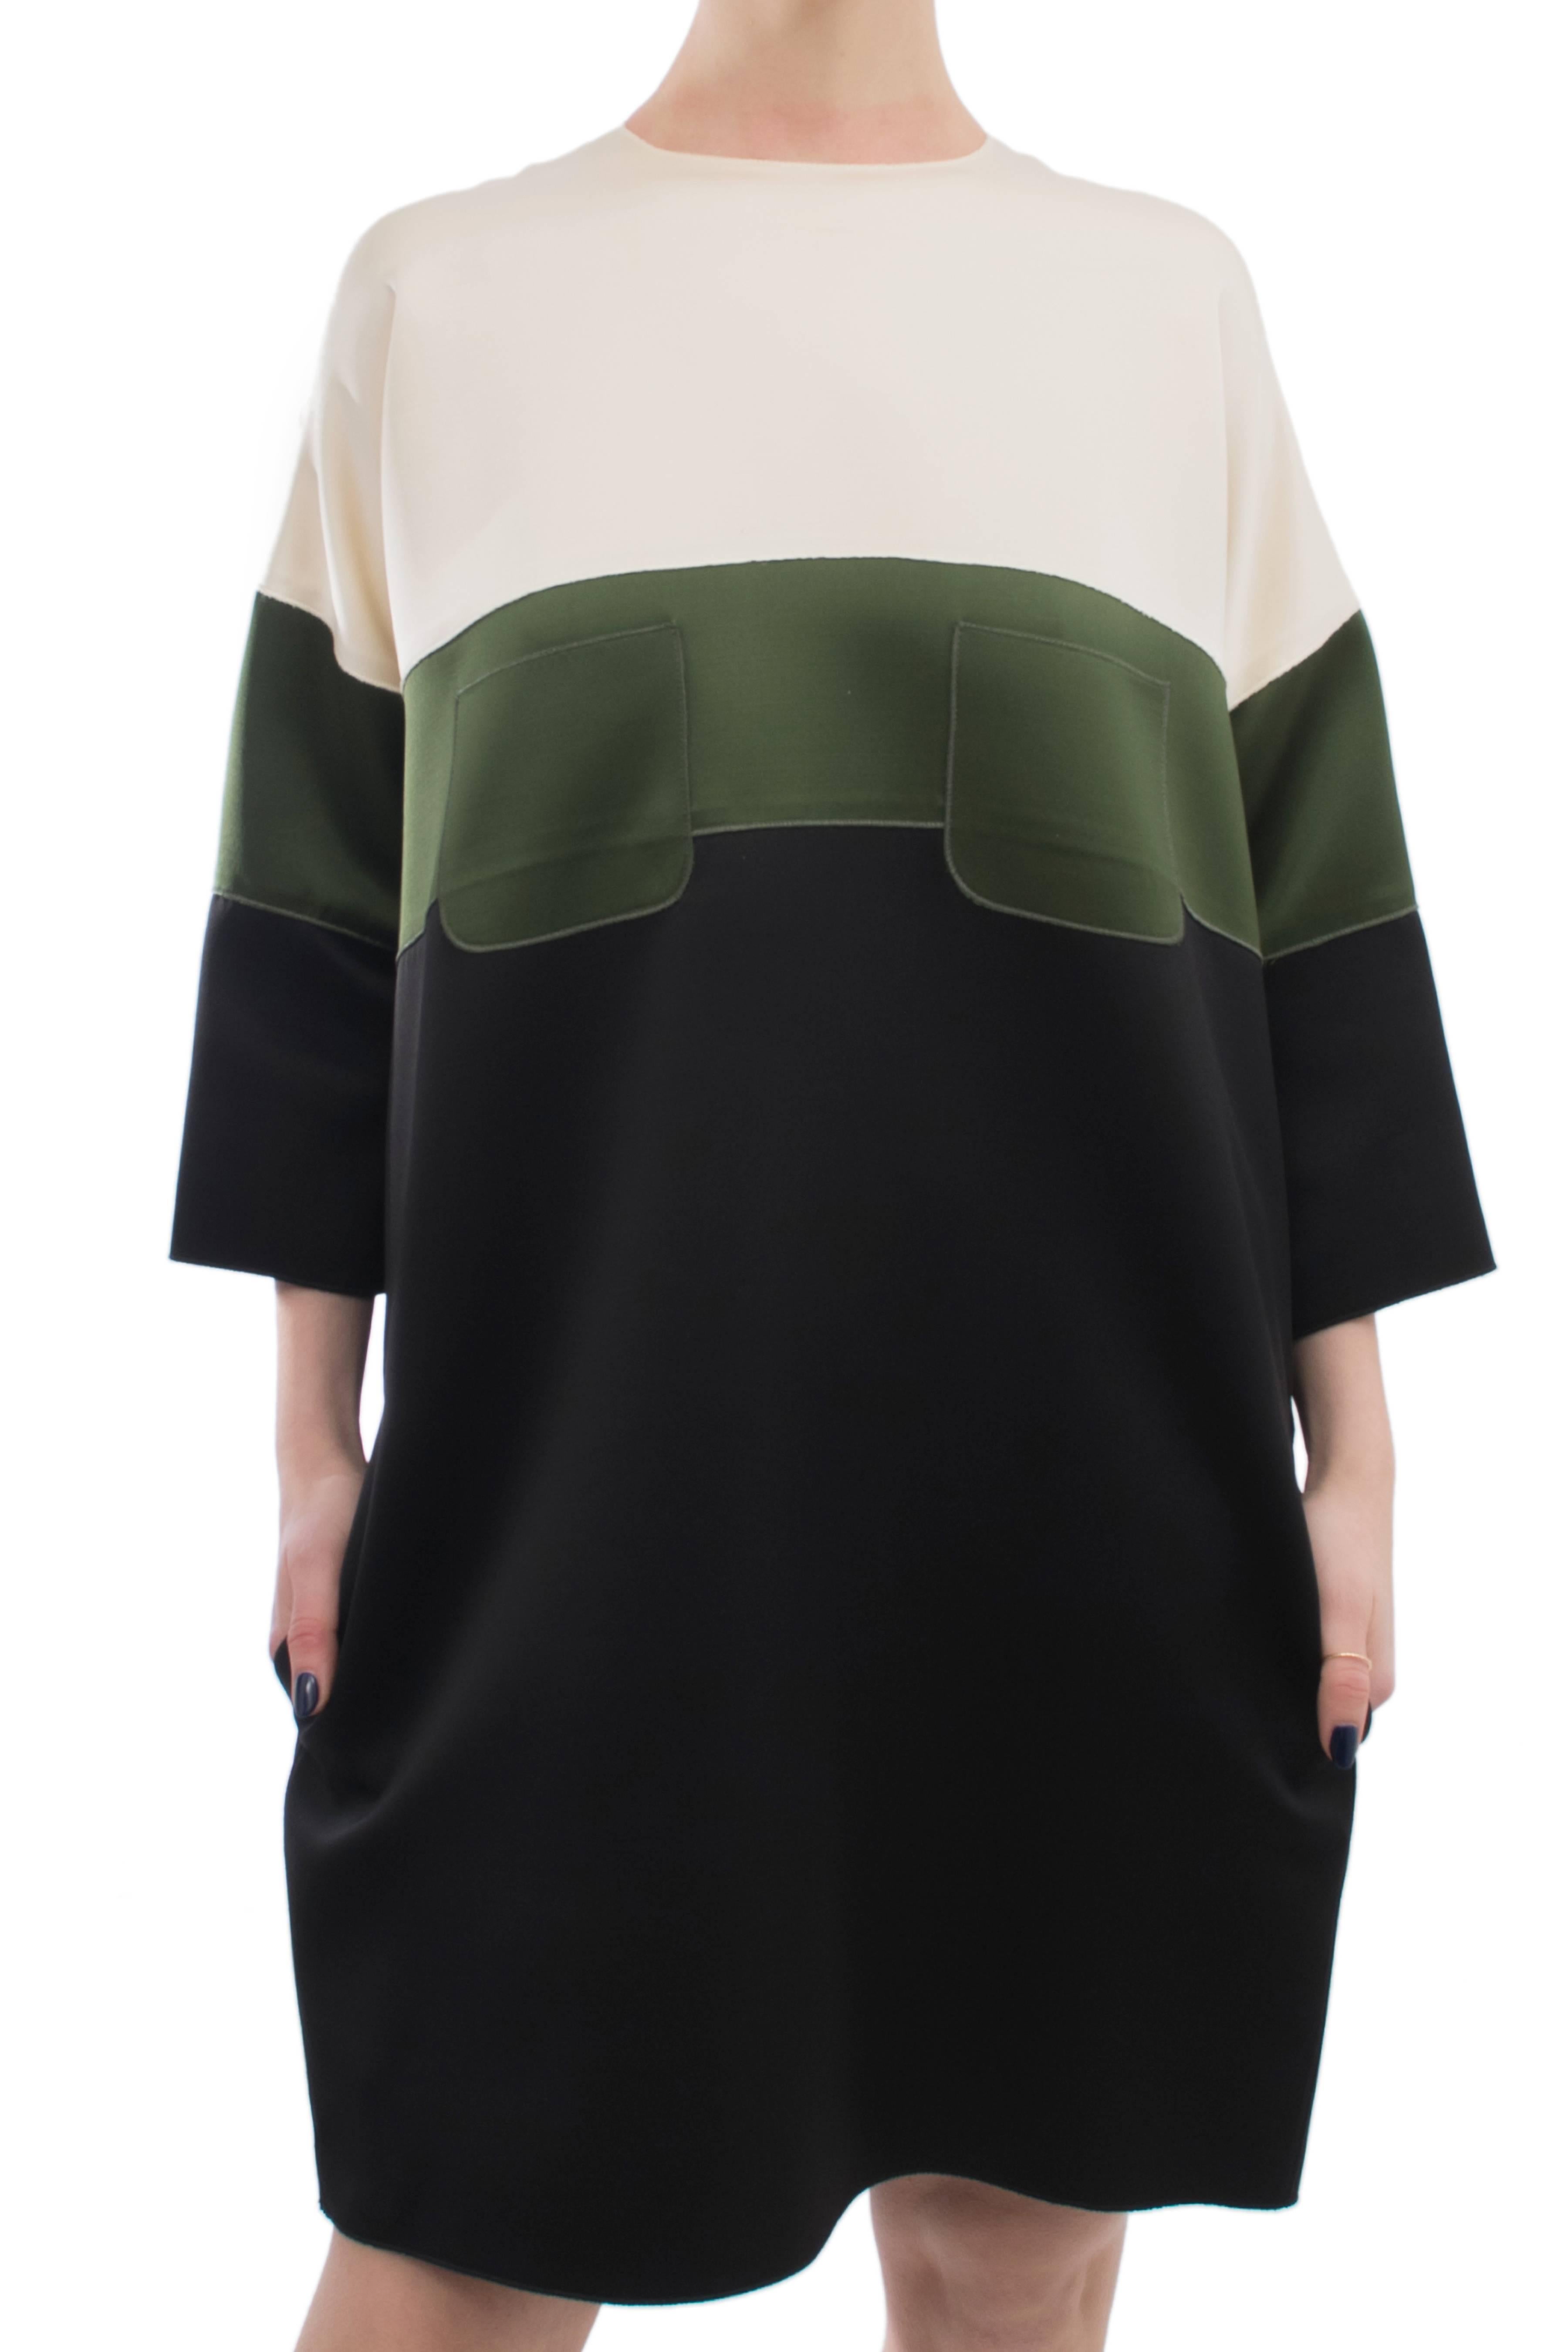 Celine Ivory Green Black Color Block Shift Dress 4